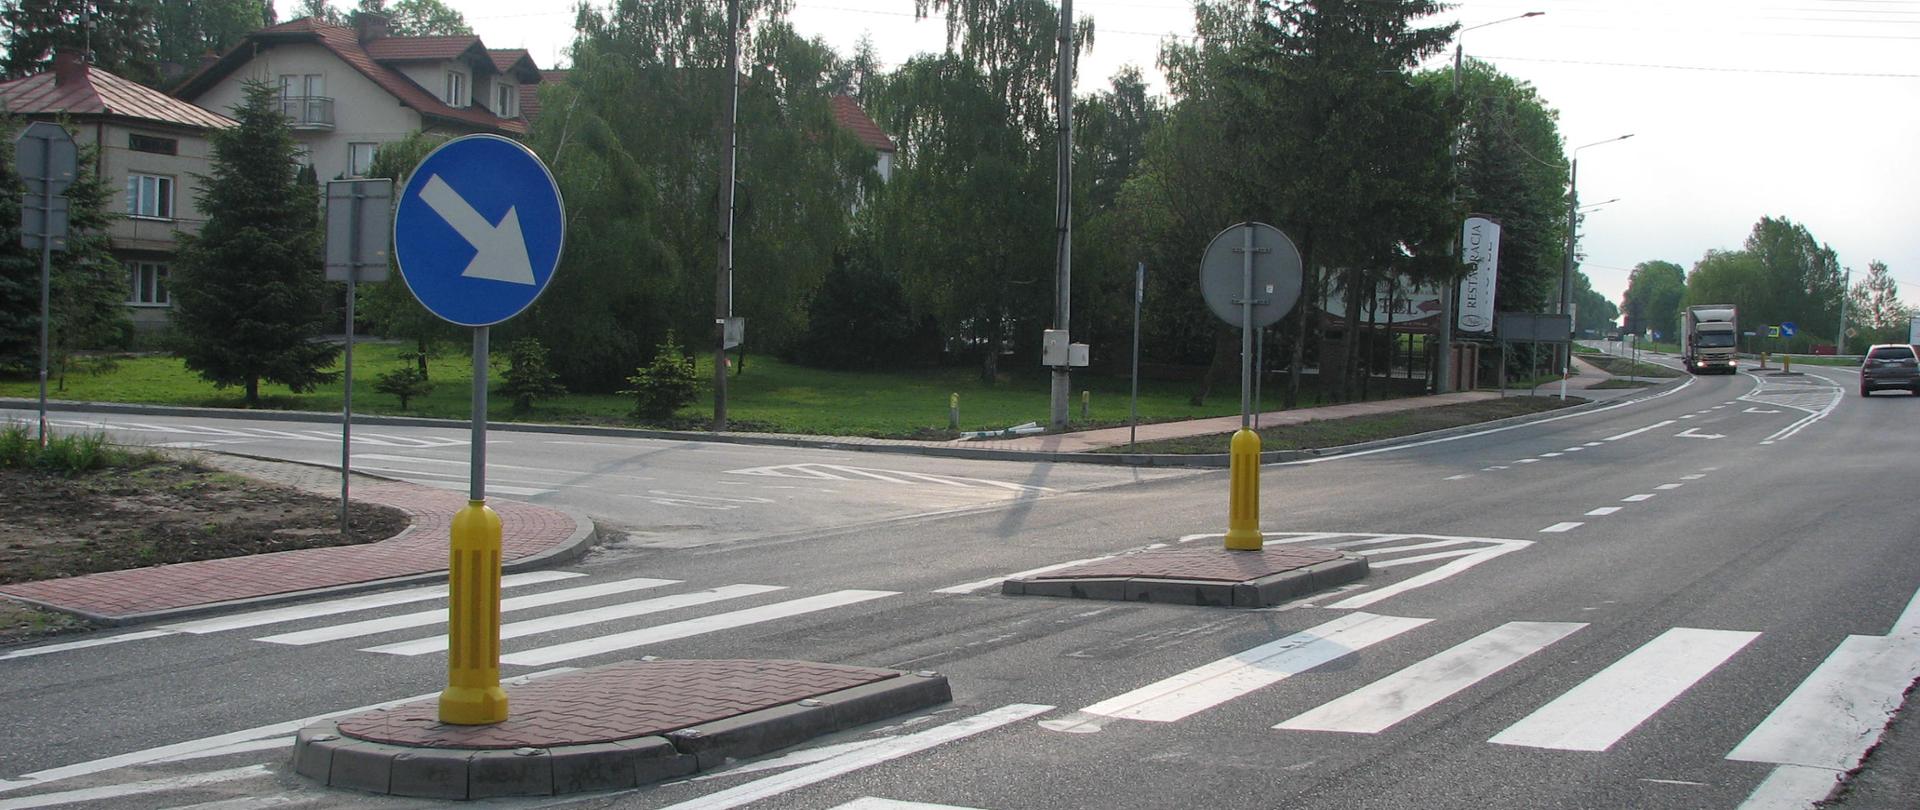 DK73 Stopnica - skrzyżowanie z przejściem i azylem dla pieszych. Na pierwszym planie na azylu niebieski znak drogowy z ukośną białą strzałką - nakaz jazdy po prawej stronie znaku. Po lewej stronie dom jednorodzinny. W oddali na drodze samochody. 